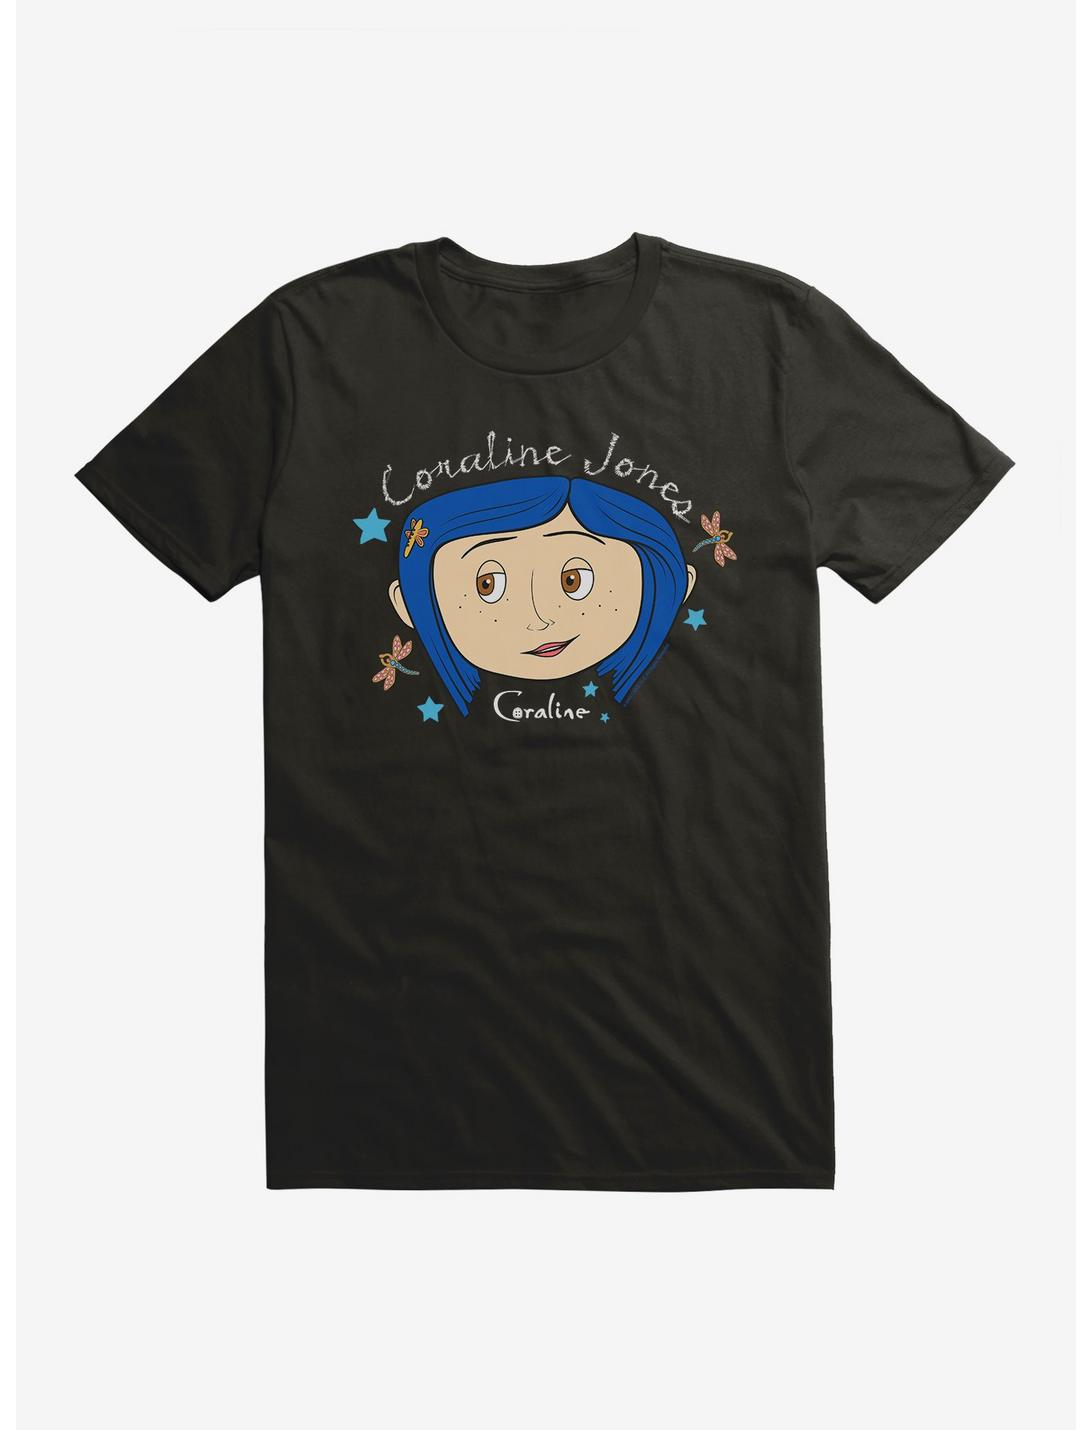 Coraline Coraline Jones T-Shirt, BLACK, hi-res